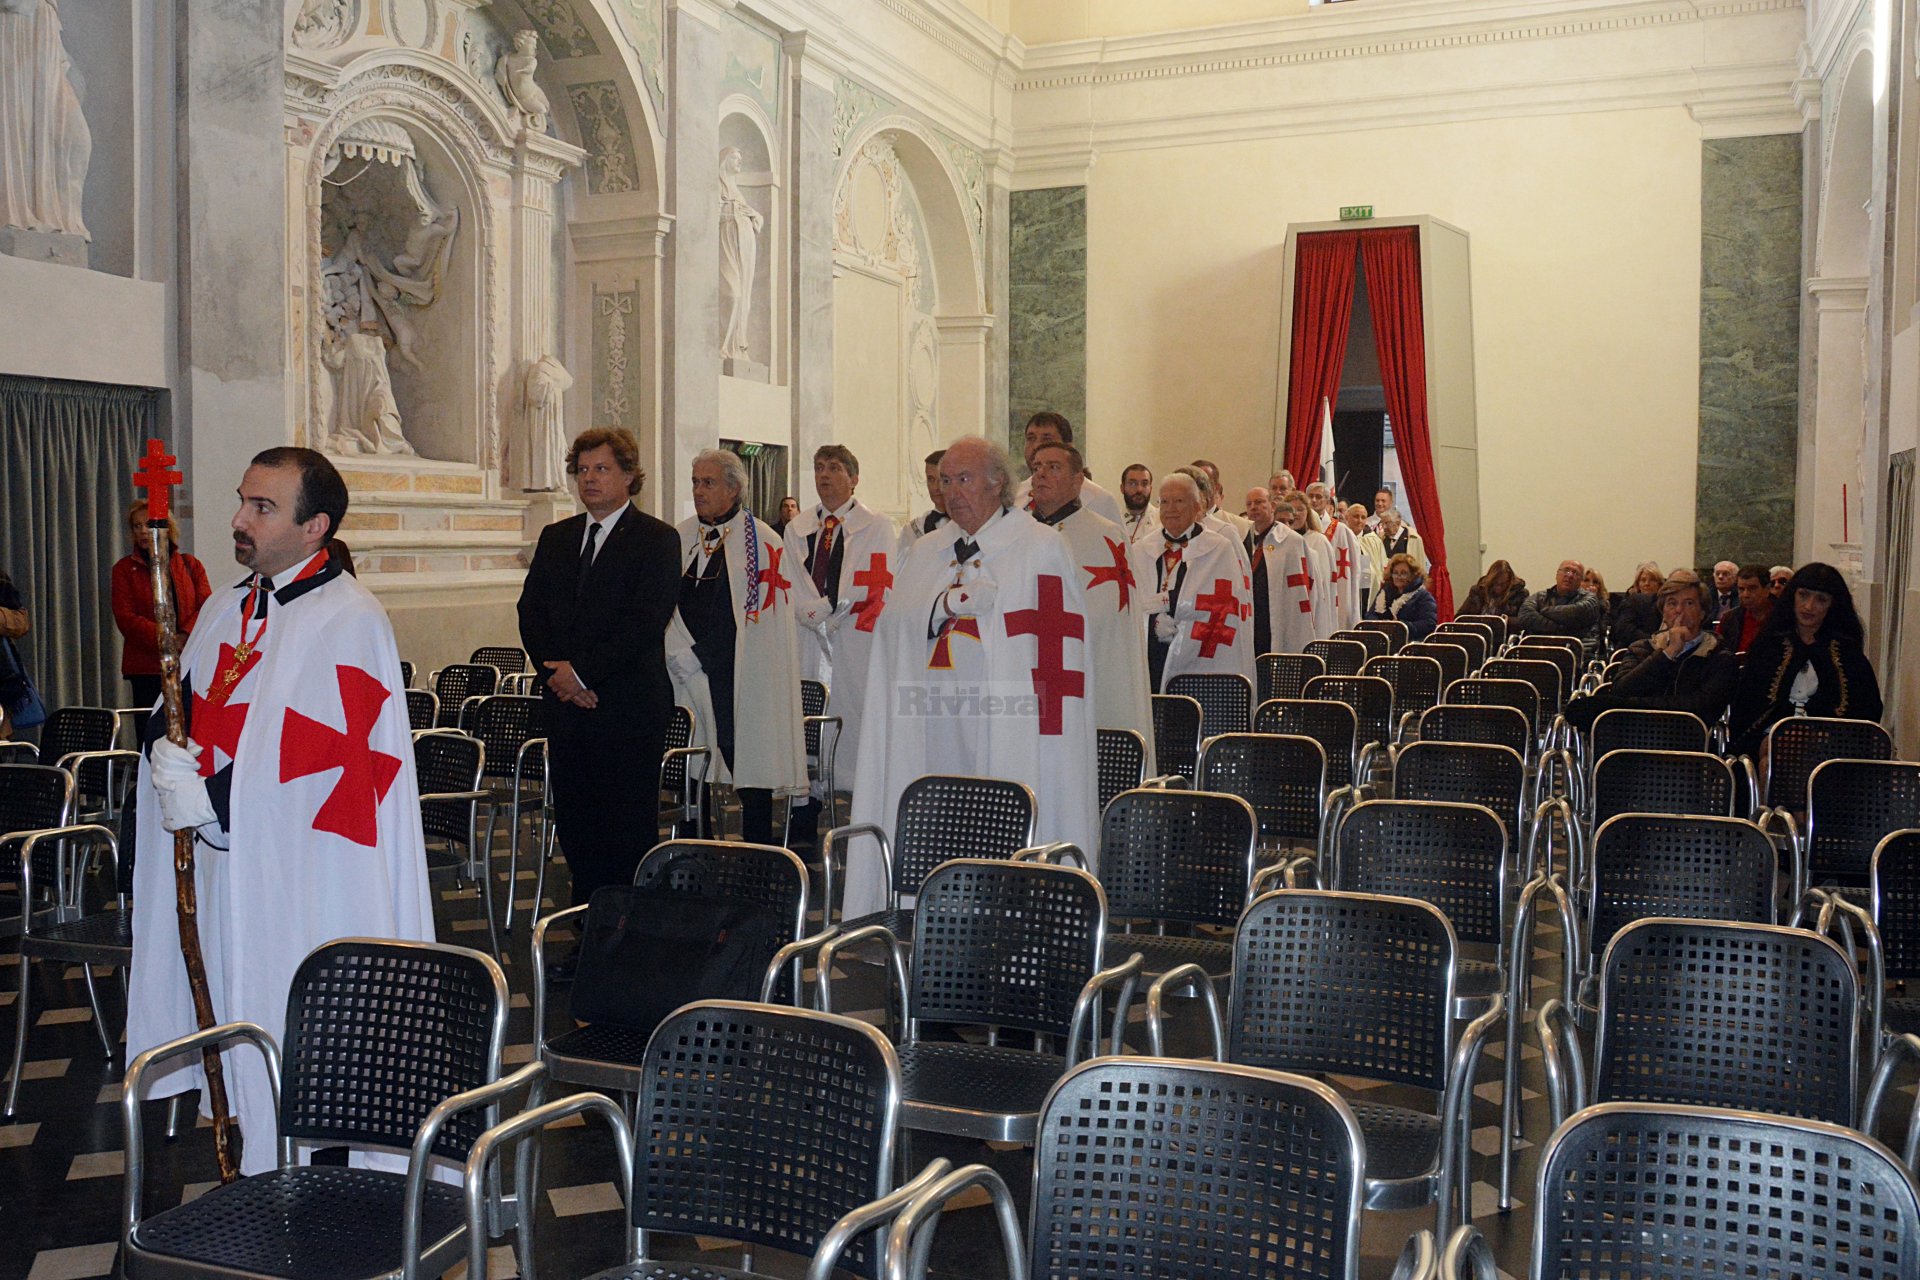 Cavalieri Templari ex chiesa San Francesco Ventimiglia 1 dicembre 2018_10